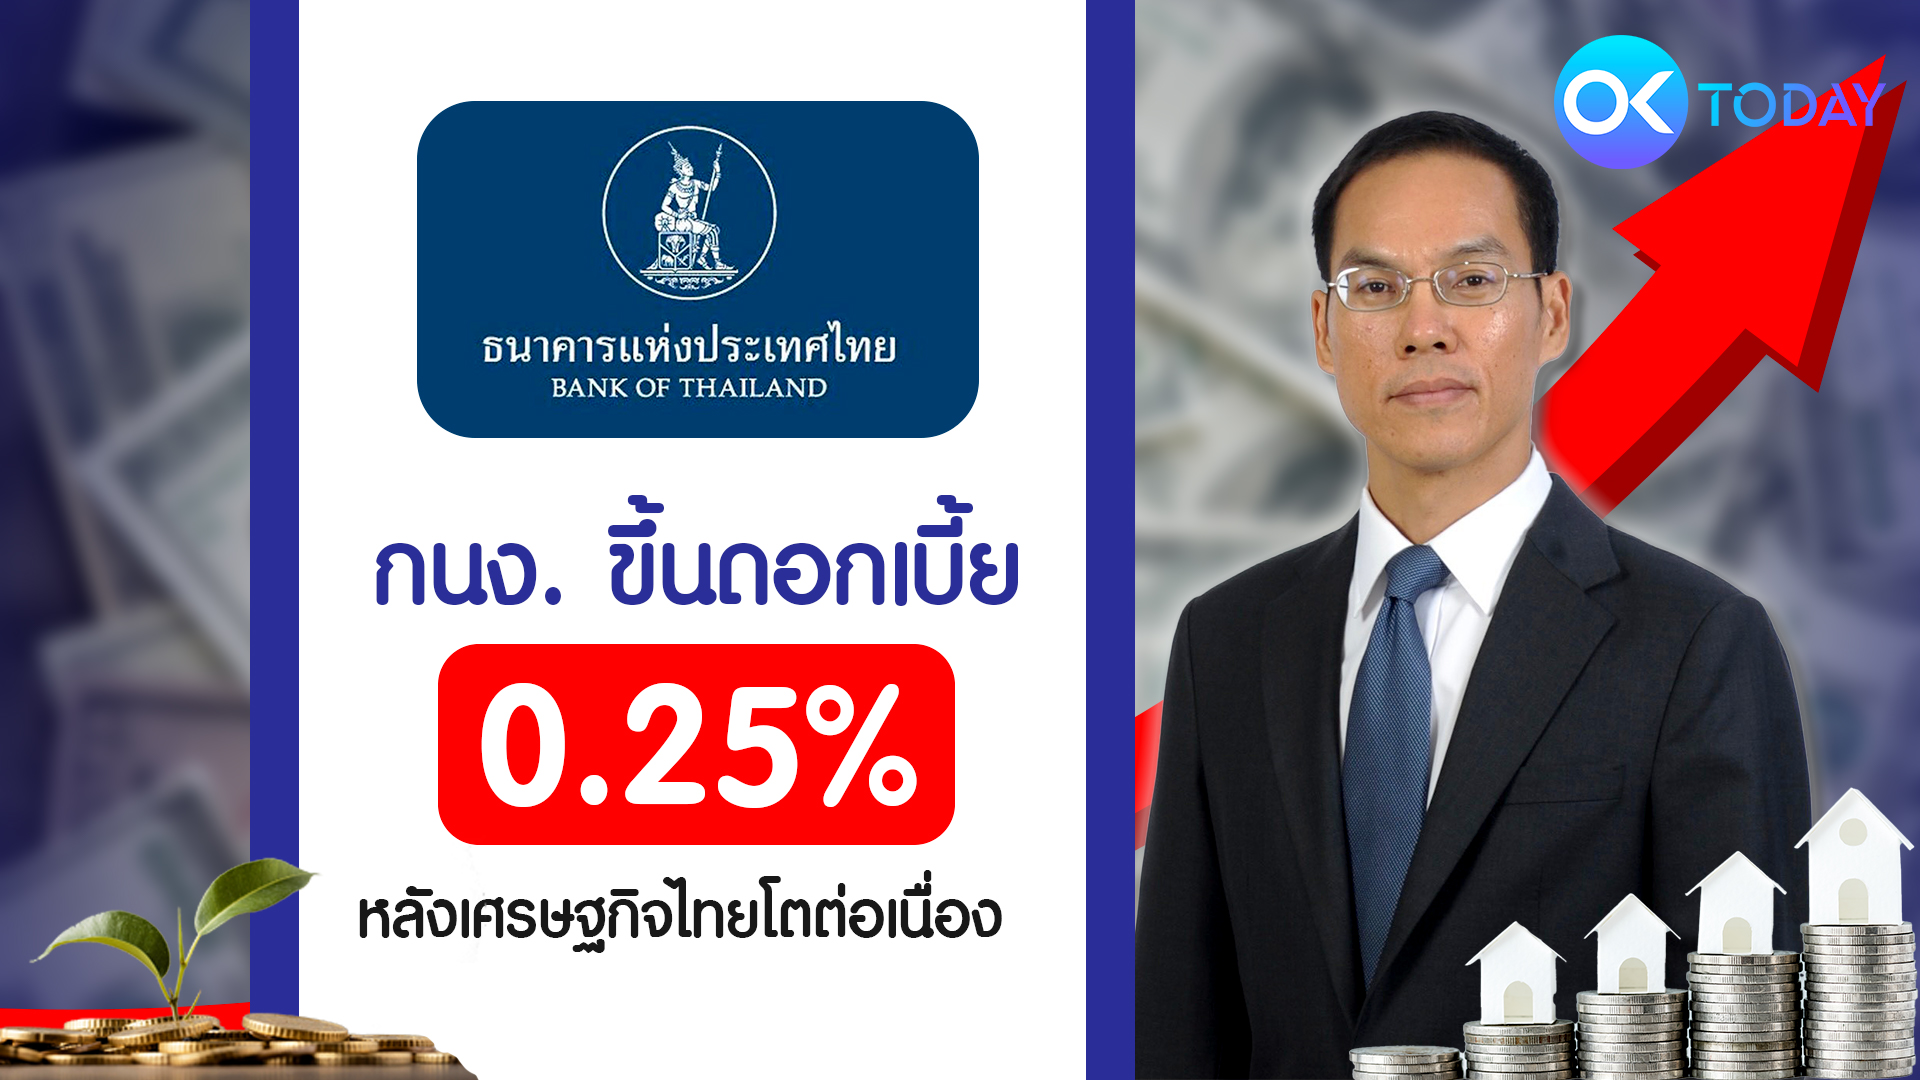 กนง. ขึ้นดอกเบี้ย 0.25% หลังเศรษฐกิจไทยโตต่อเนื่อง